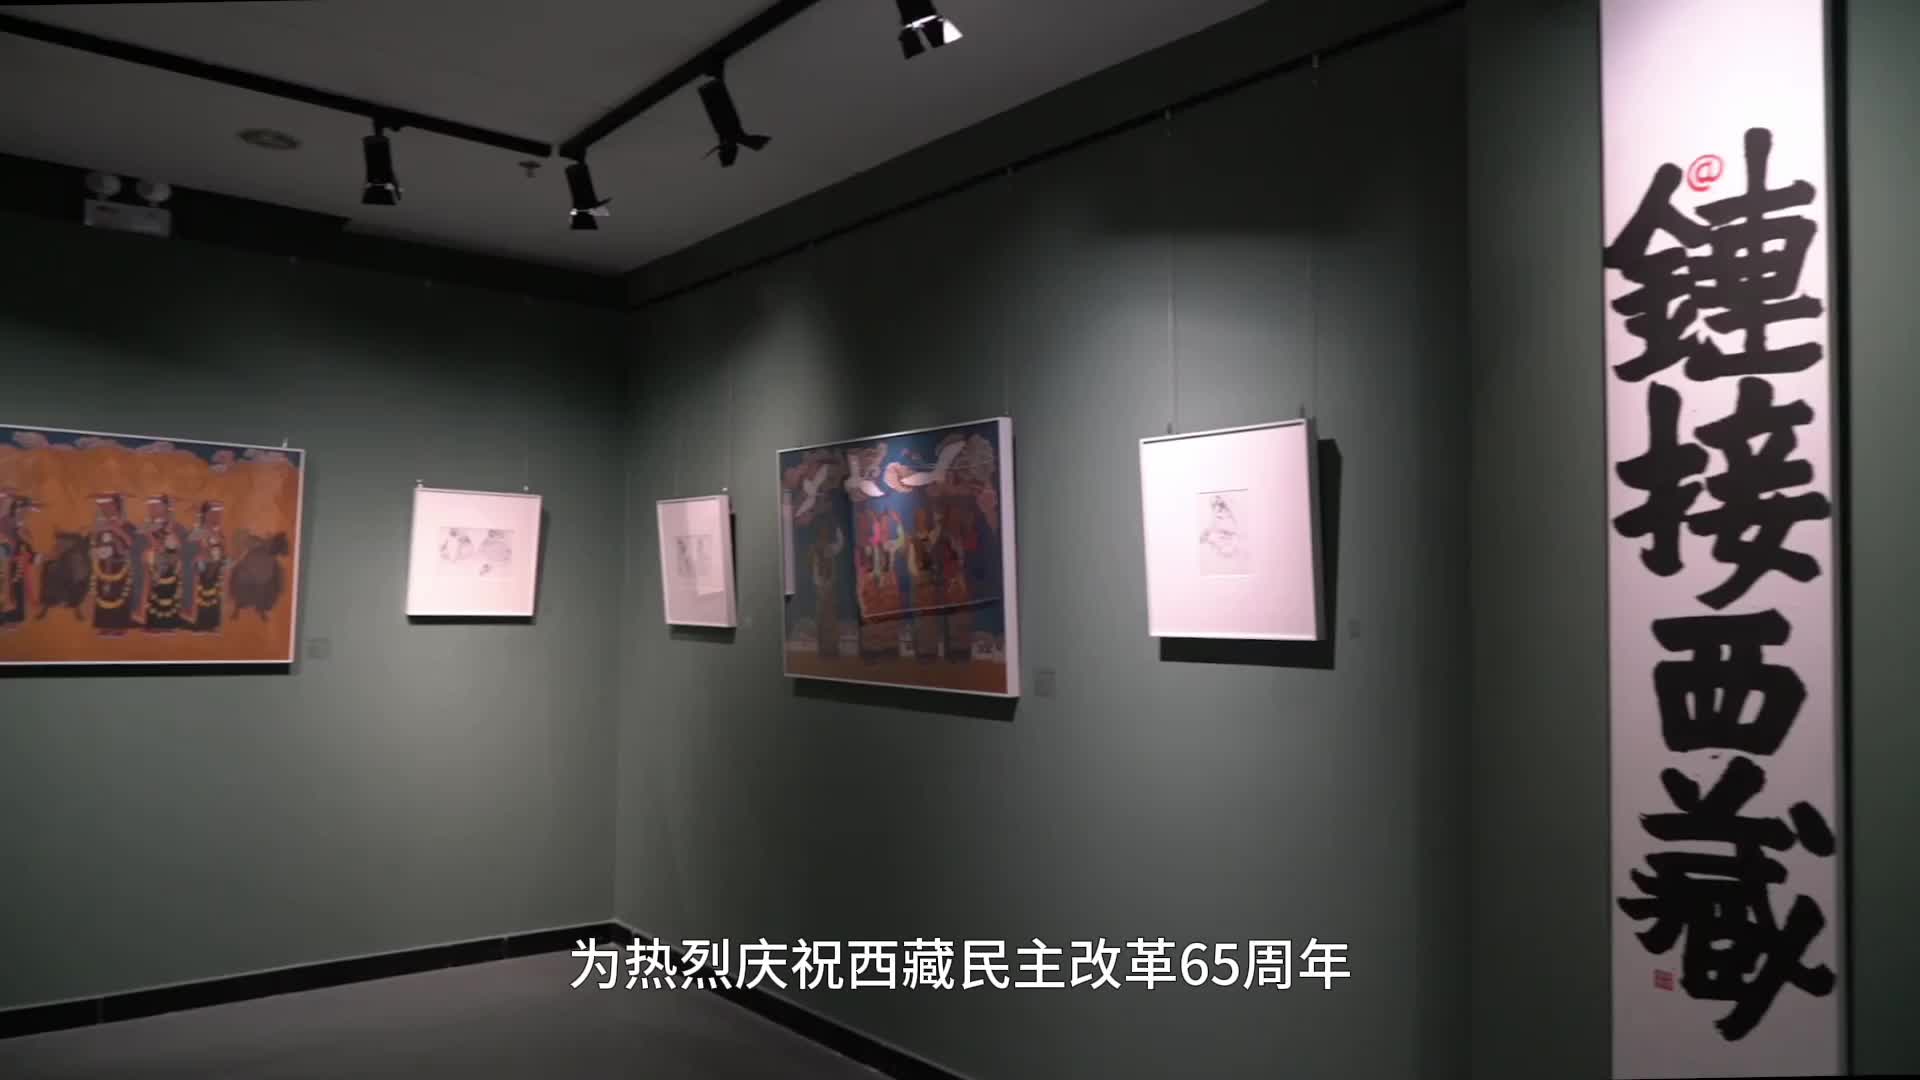 “链接西藏——翟跃飞作品展”在西藏文化博物馆开展